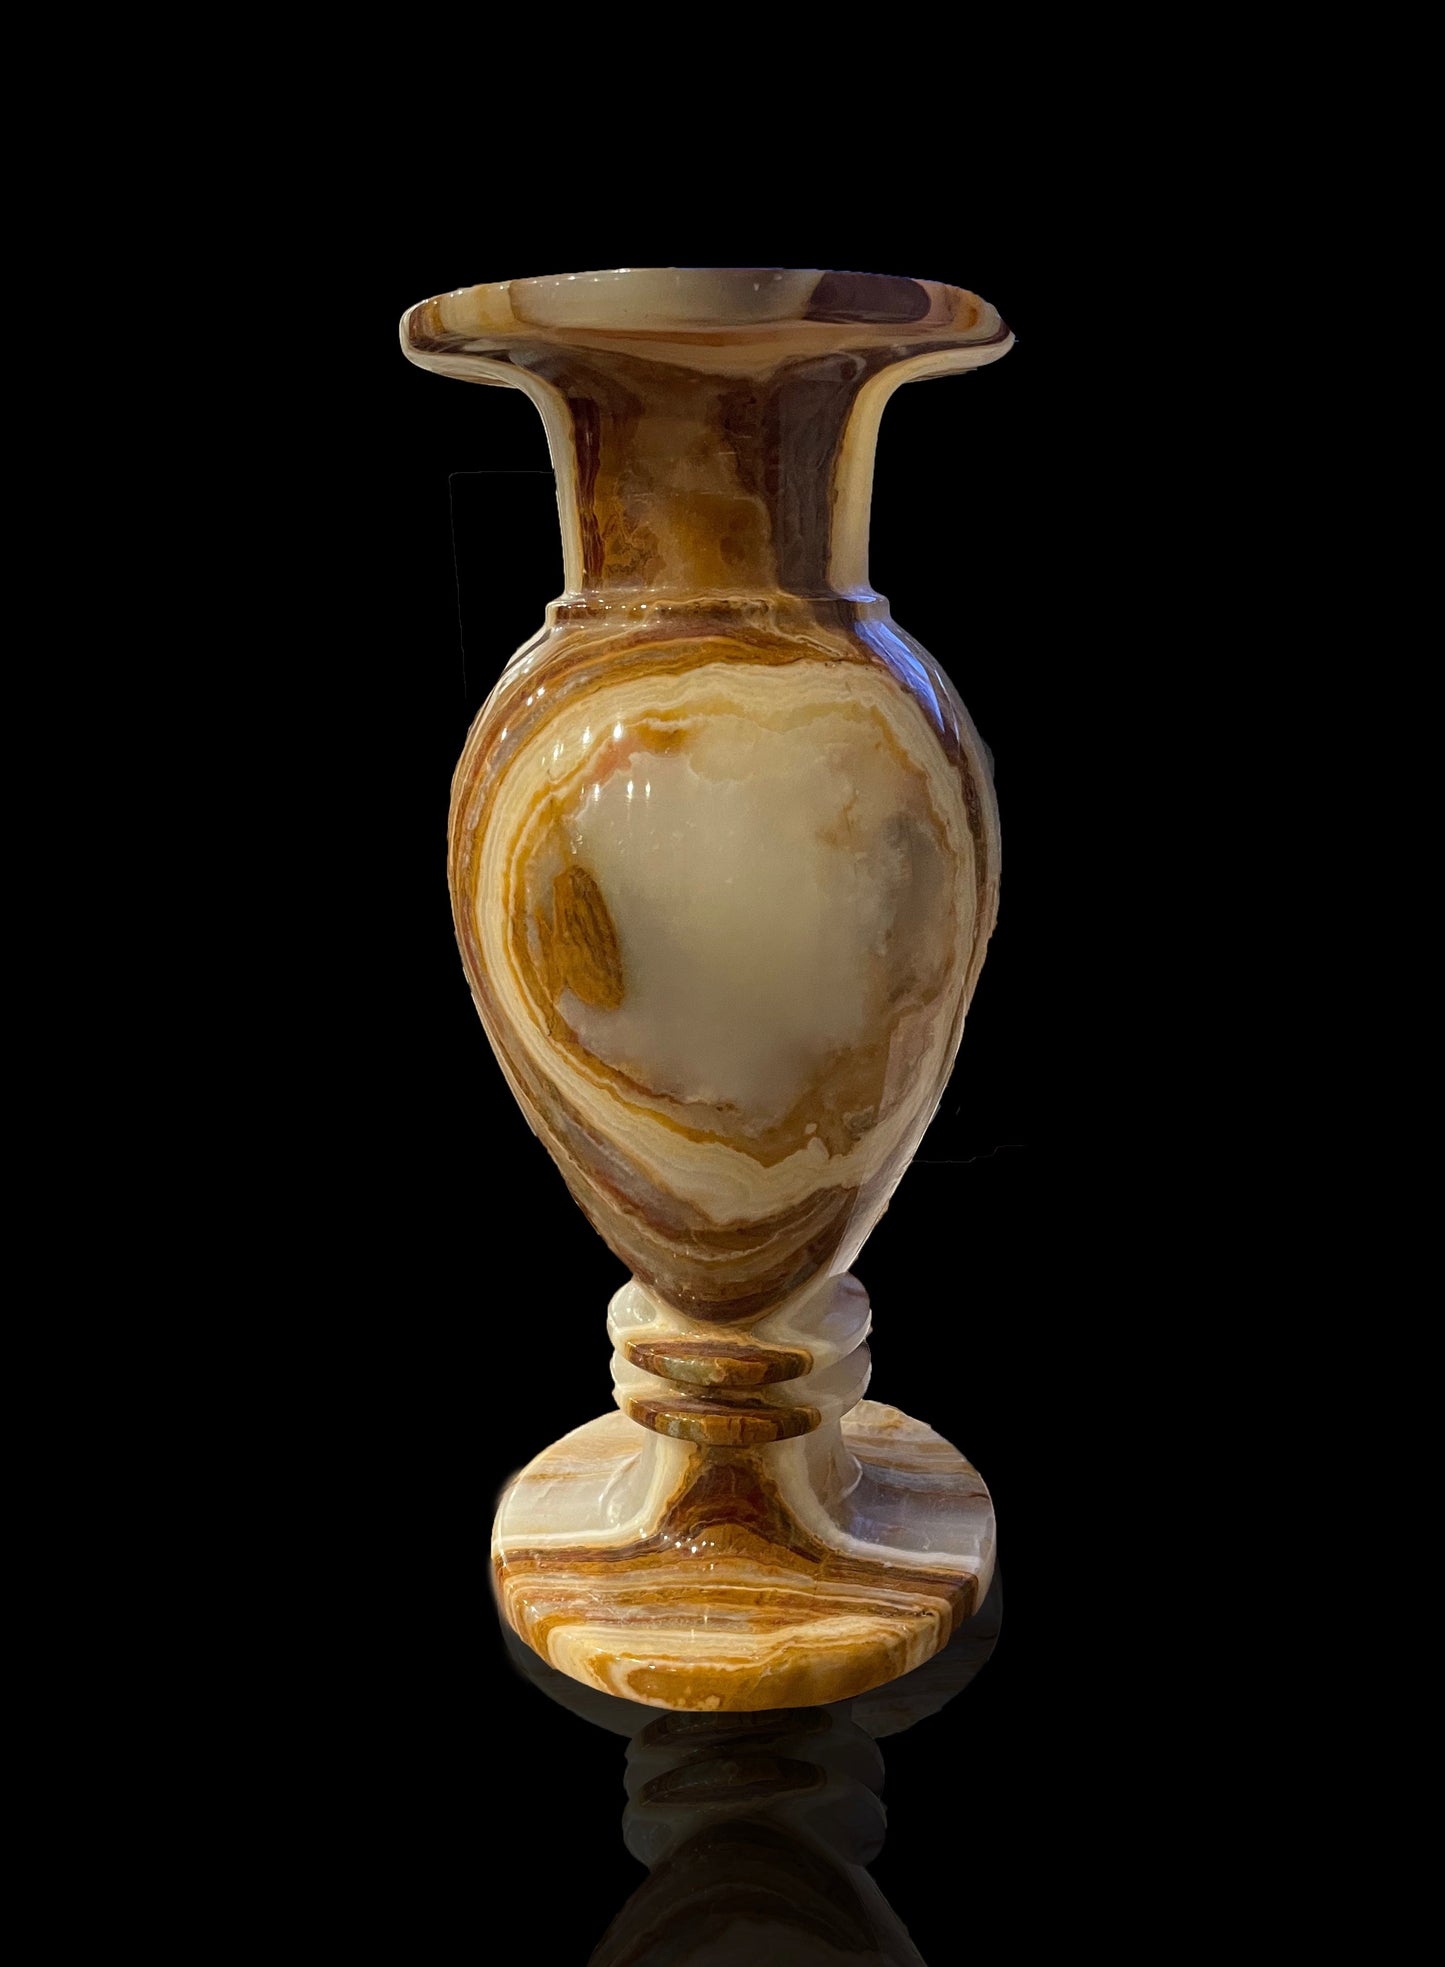 Extra Large Banded Onyx Vase // 9.14 Lb.